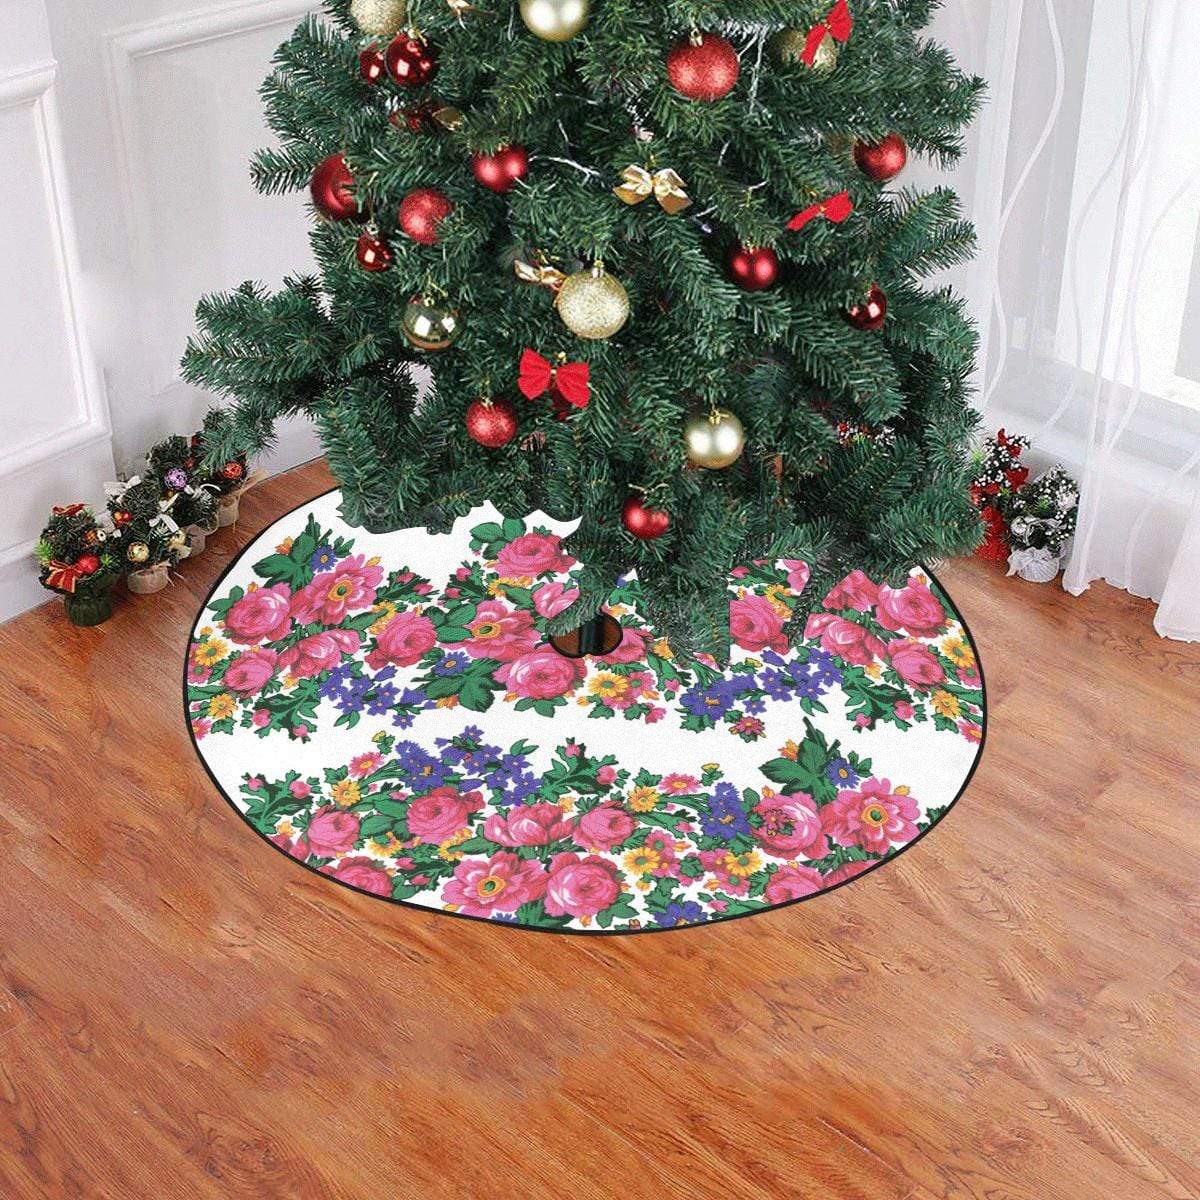 Kokum's Revenge-White Christmas Tree Skirt 47" x 47" Christmas Tree Skirt e-joyer 